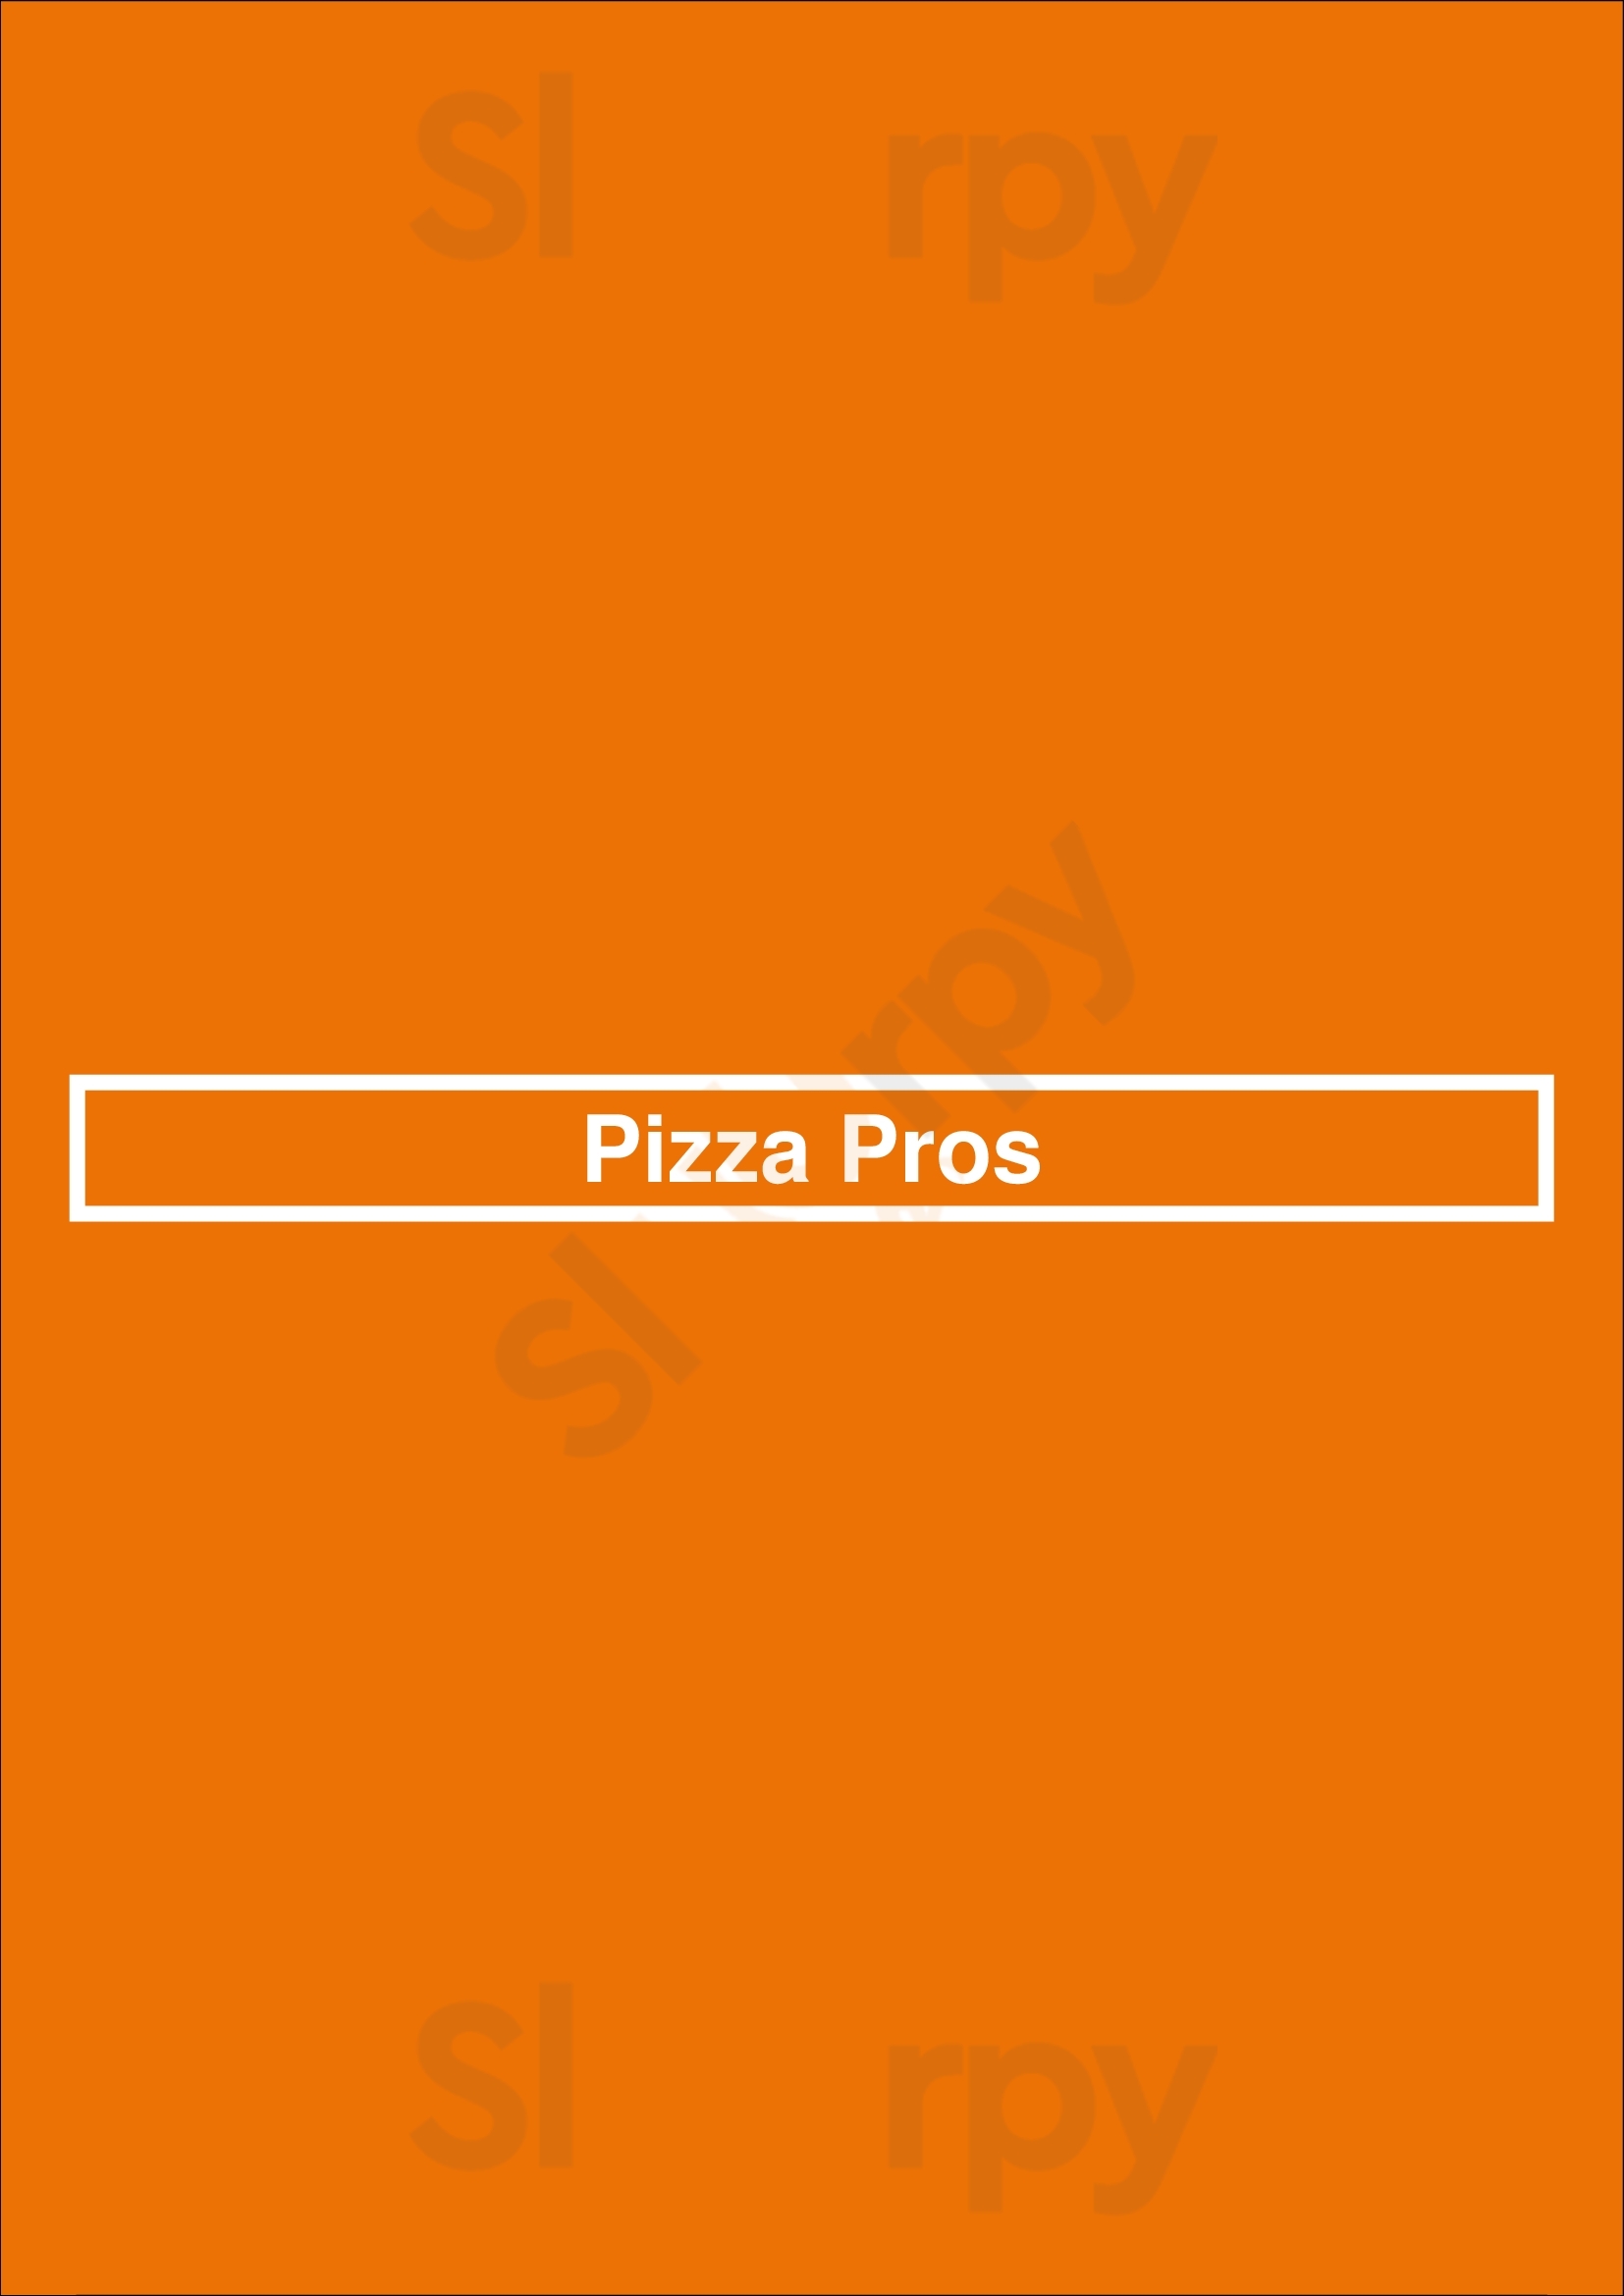 Pizza Pros Brampton Menu - 1